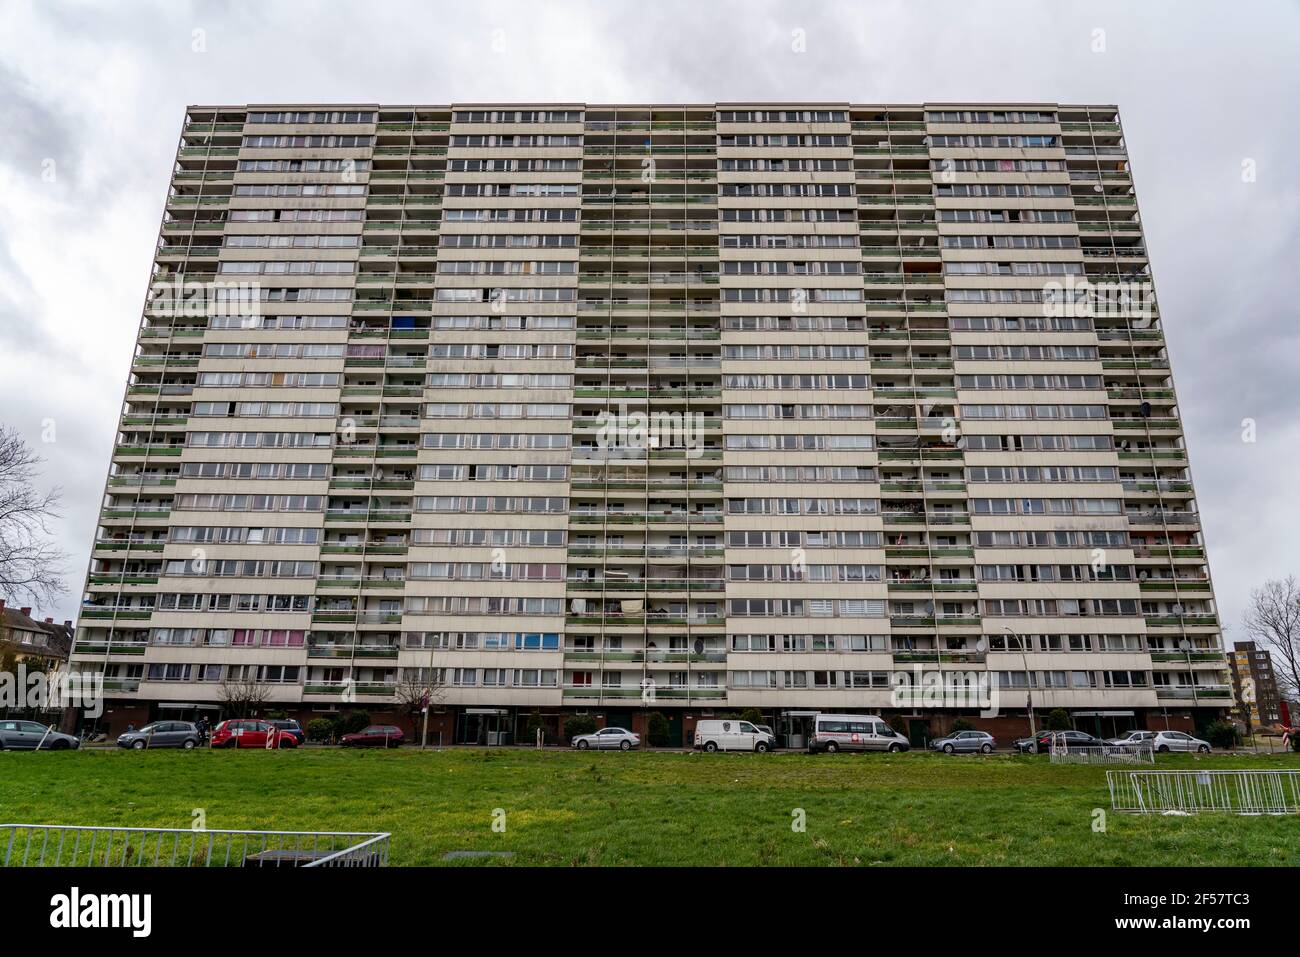 Duisburg-Hochheide, grande tenuta residenziale Wohnpark Hochheide, 6 alti edifici a 20 piani con oltre 1440 appartamenti, a partire dagli anni '70, un alto edificio Foto Stock